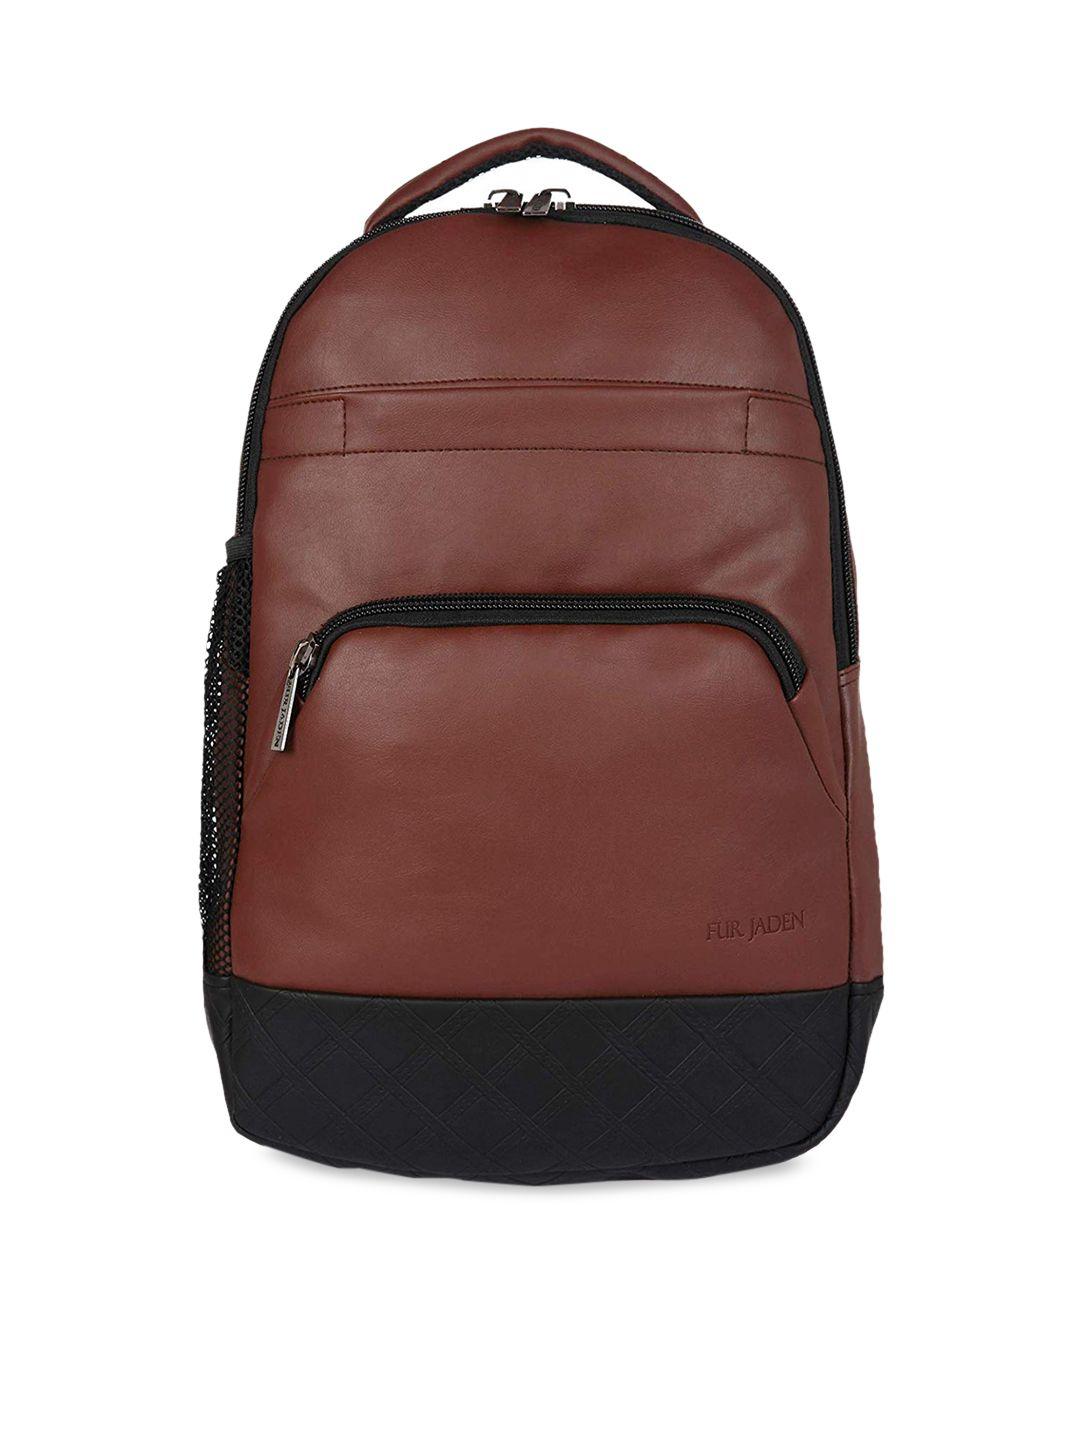 fur jaden unisex coffee brown solid backpack